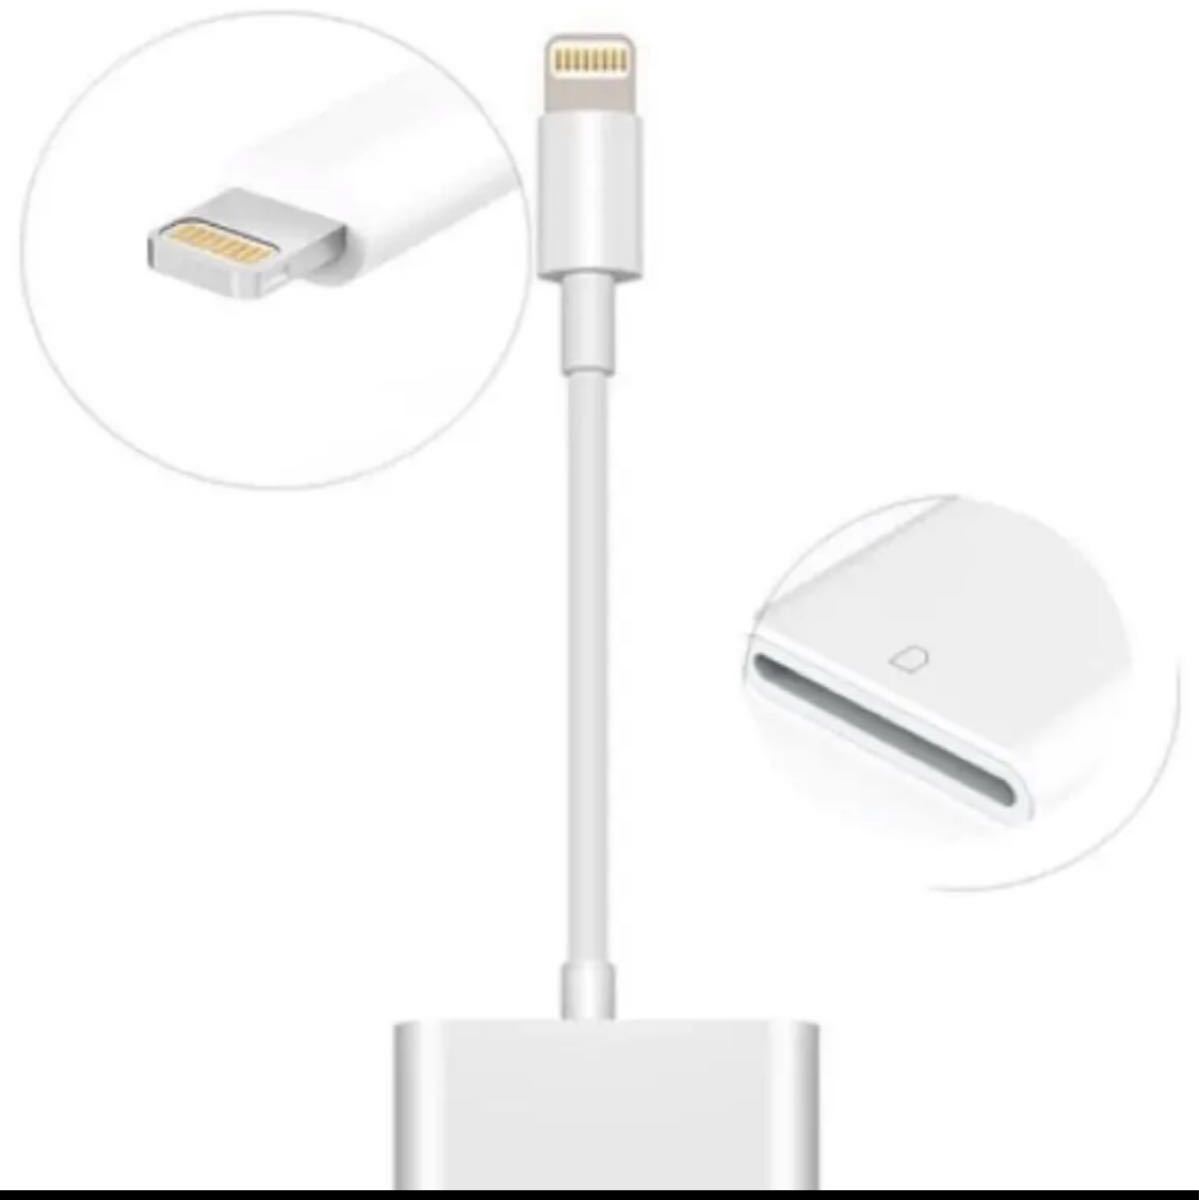 IOS 13 対応 iPhone iPad 用ライトニング iPhone iPadLightning SD カード リーダー 